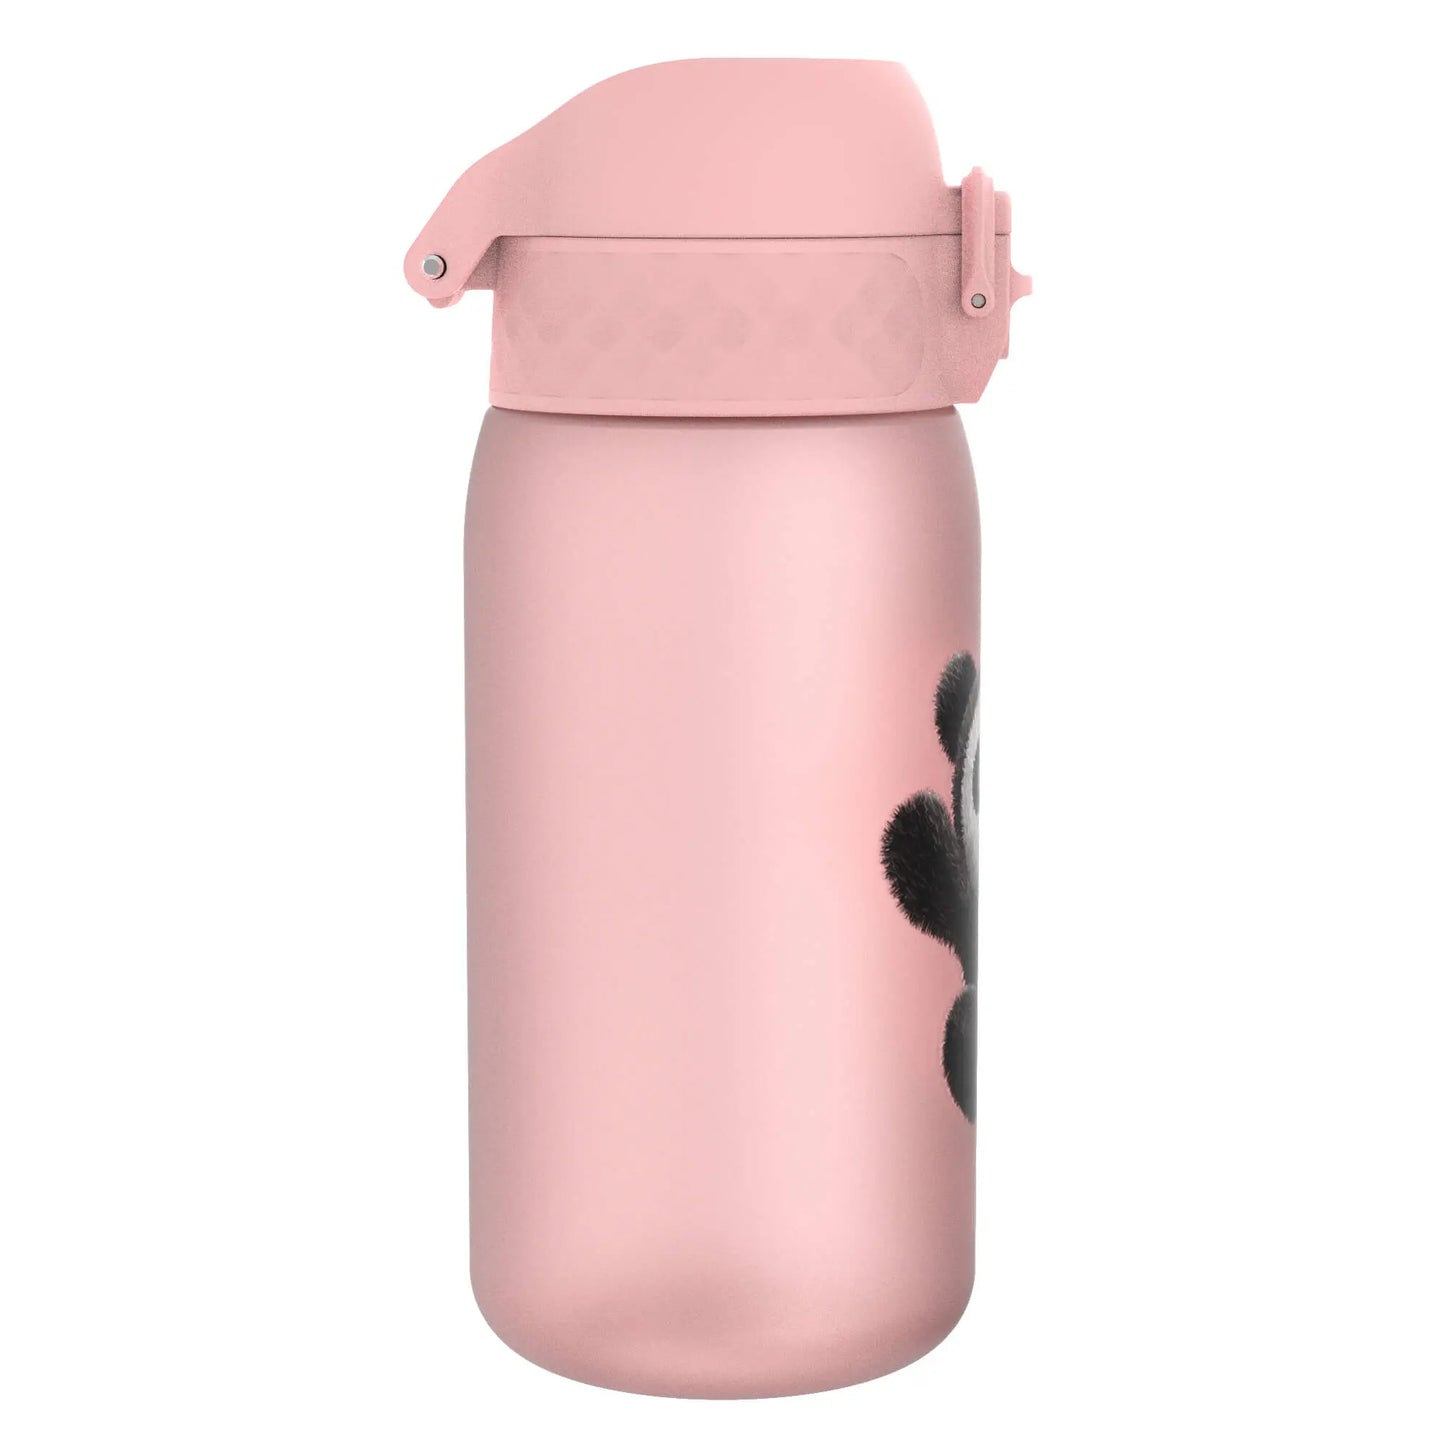 Leak Proof Kids Water Bottle, Recyclon™, Panda, 350ml (12oz) Ion8